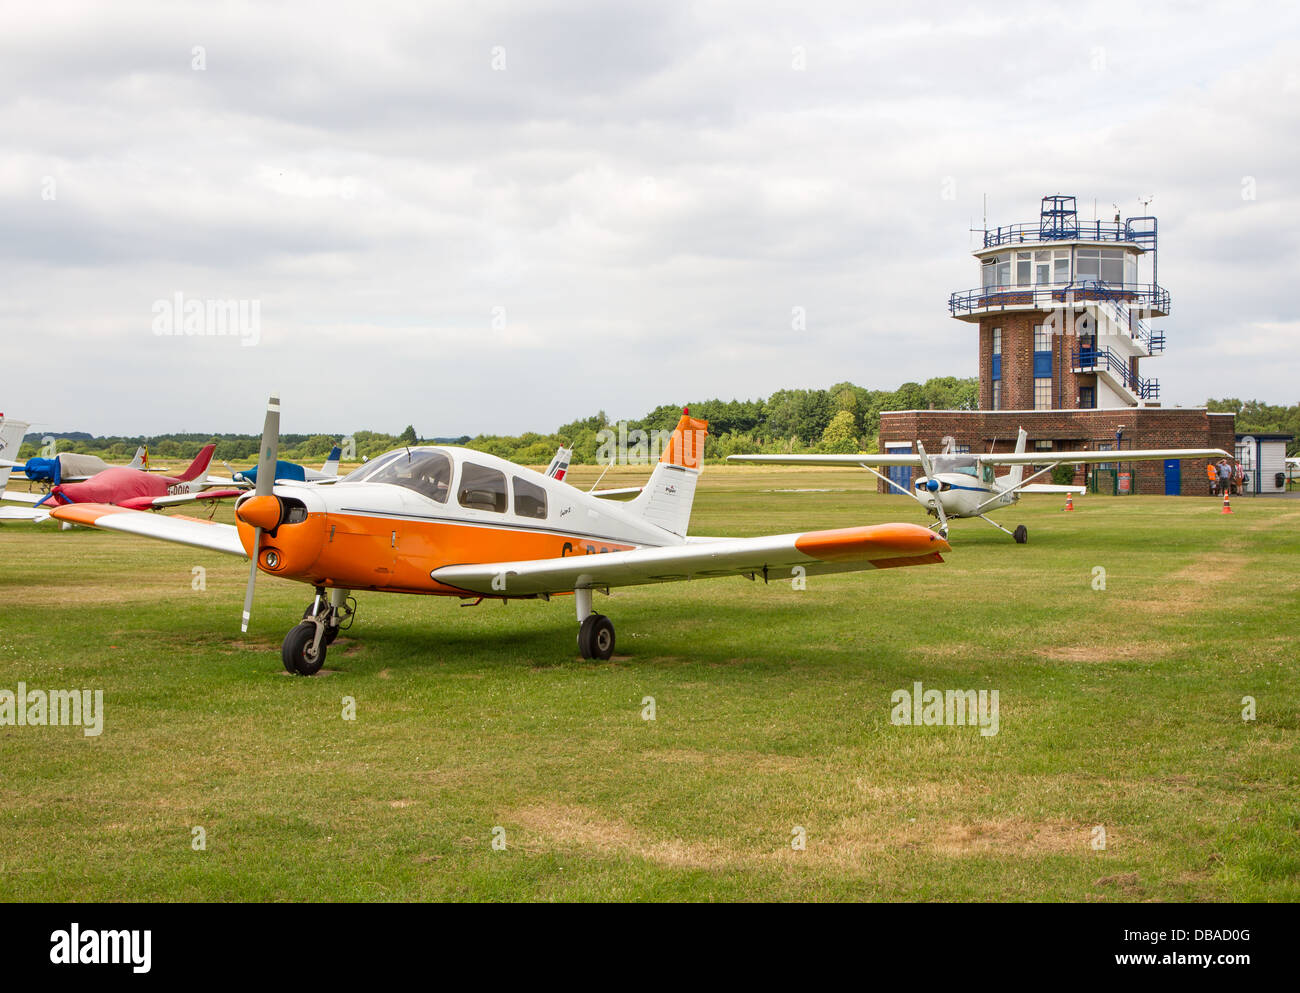 Avions légers et tour de contrôle de l'aéroport de ville anciennement Barton aérodrome à Eccles, Manchester. Banque D'Images